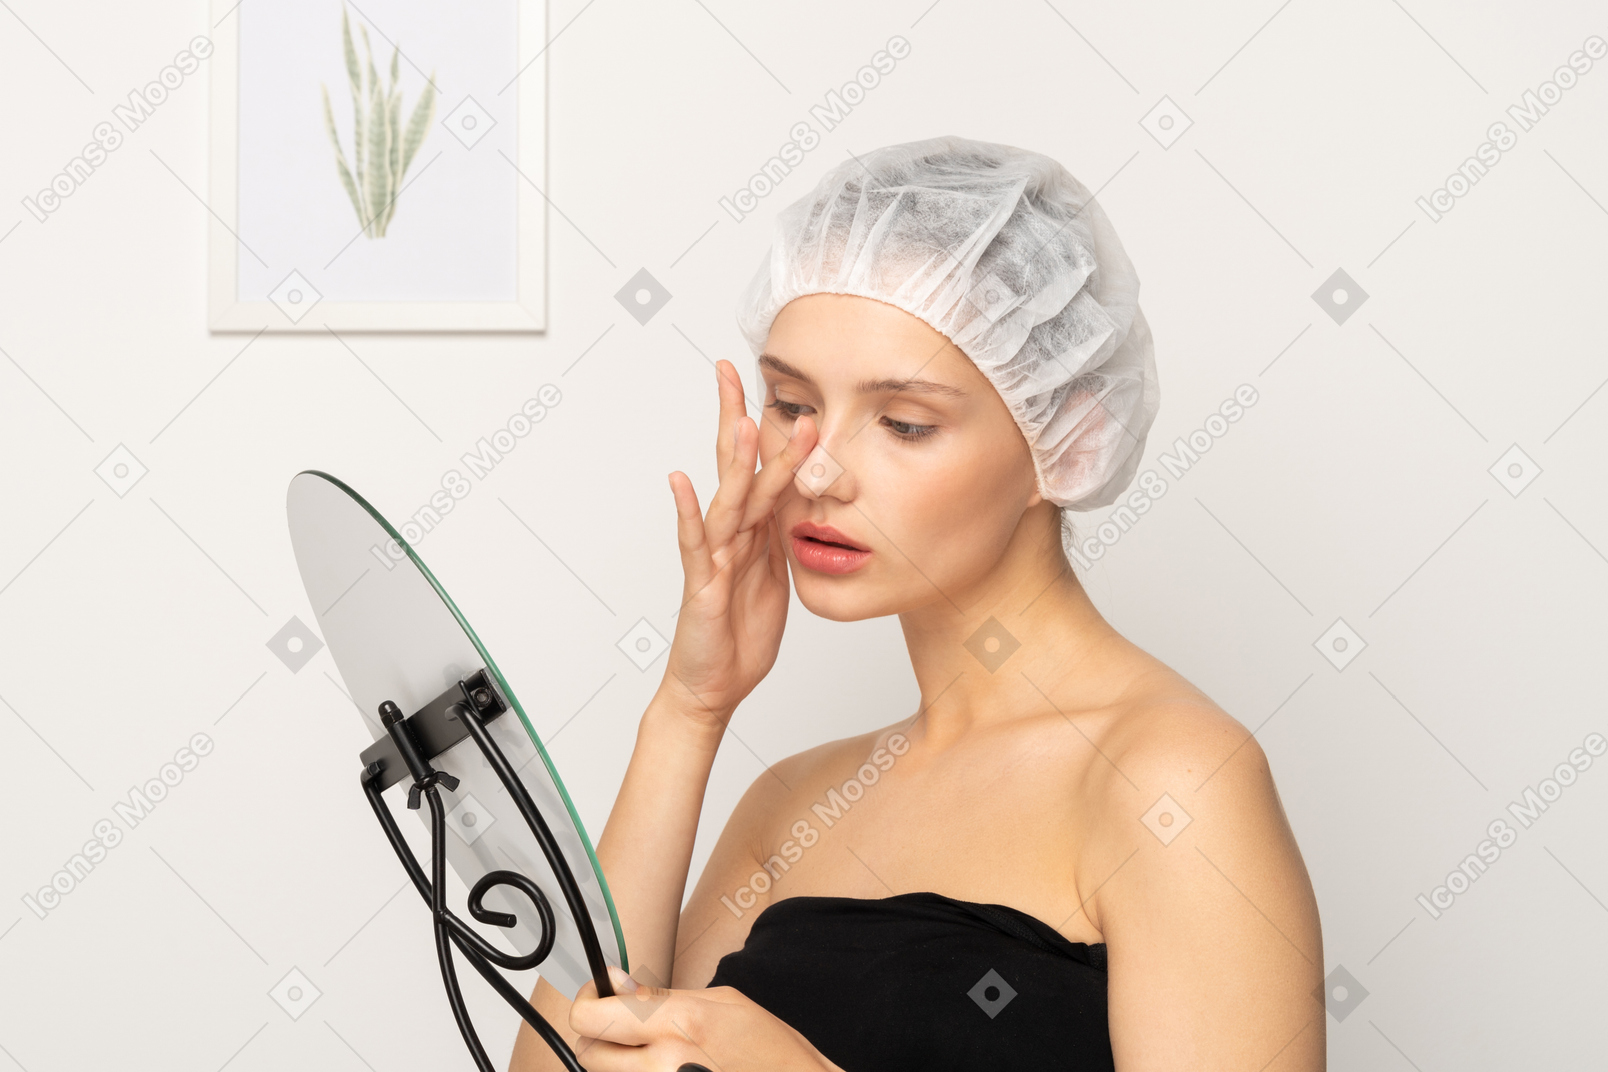 거울을 보면서 코를 만지는 의료 모자를 쓴 젊은 여성 환자